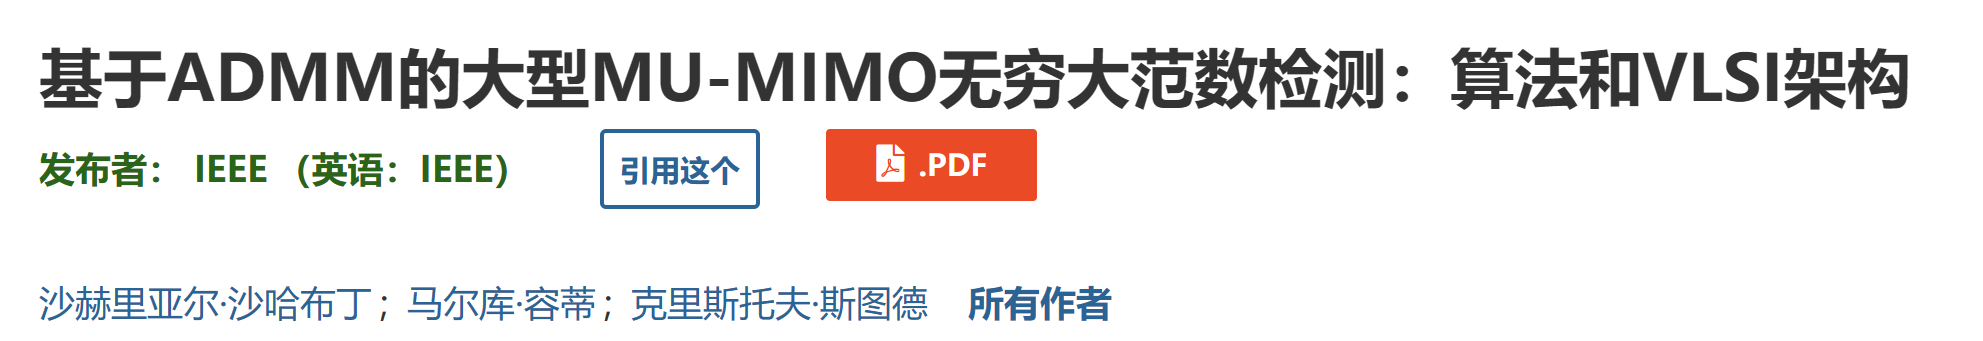 【大规模 MIMO 检测】基于ADMM的大型MU-MIMO无穷大范数检测研究（Matlab代码实现）